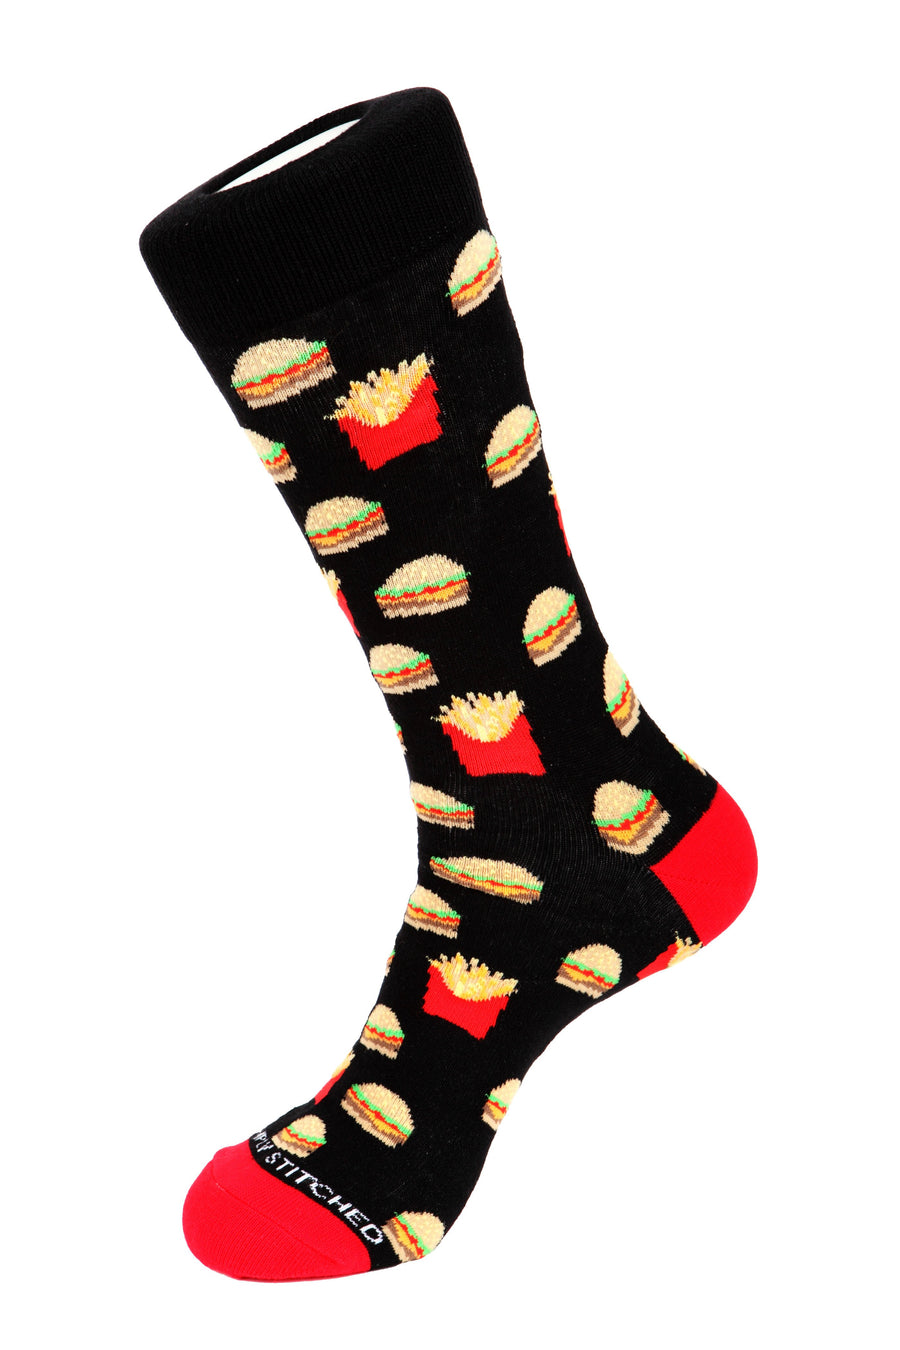 Cheeseburger and Fries Sock